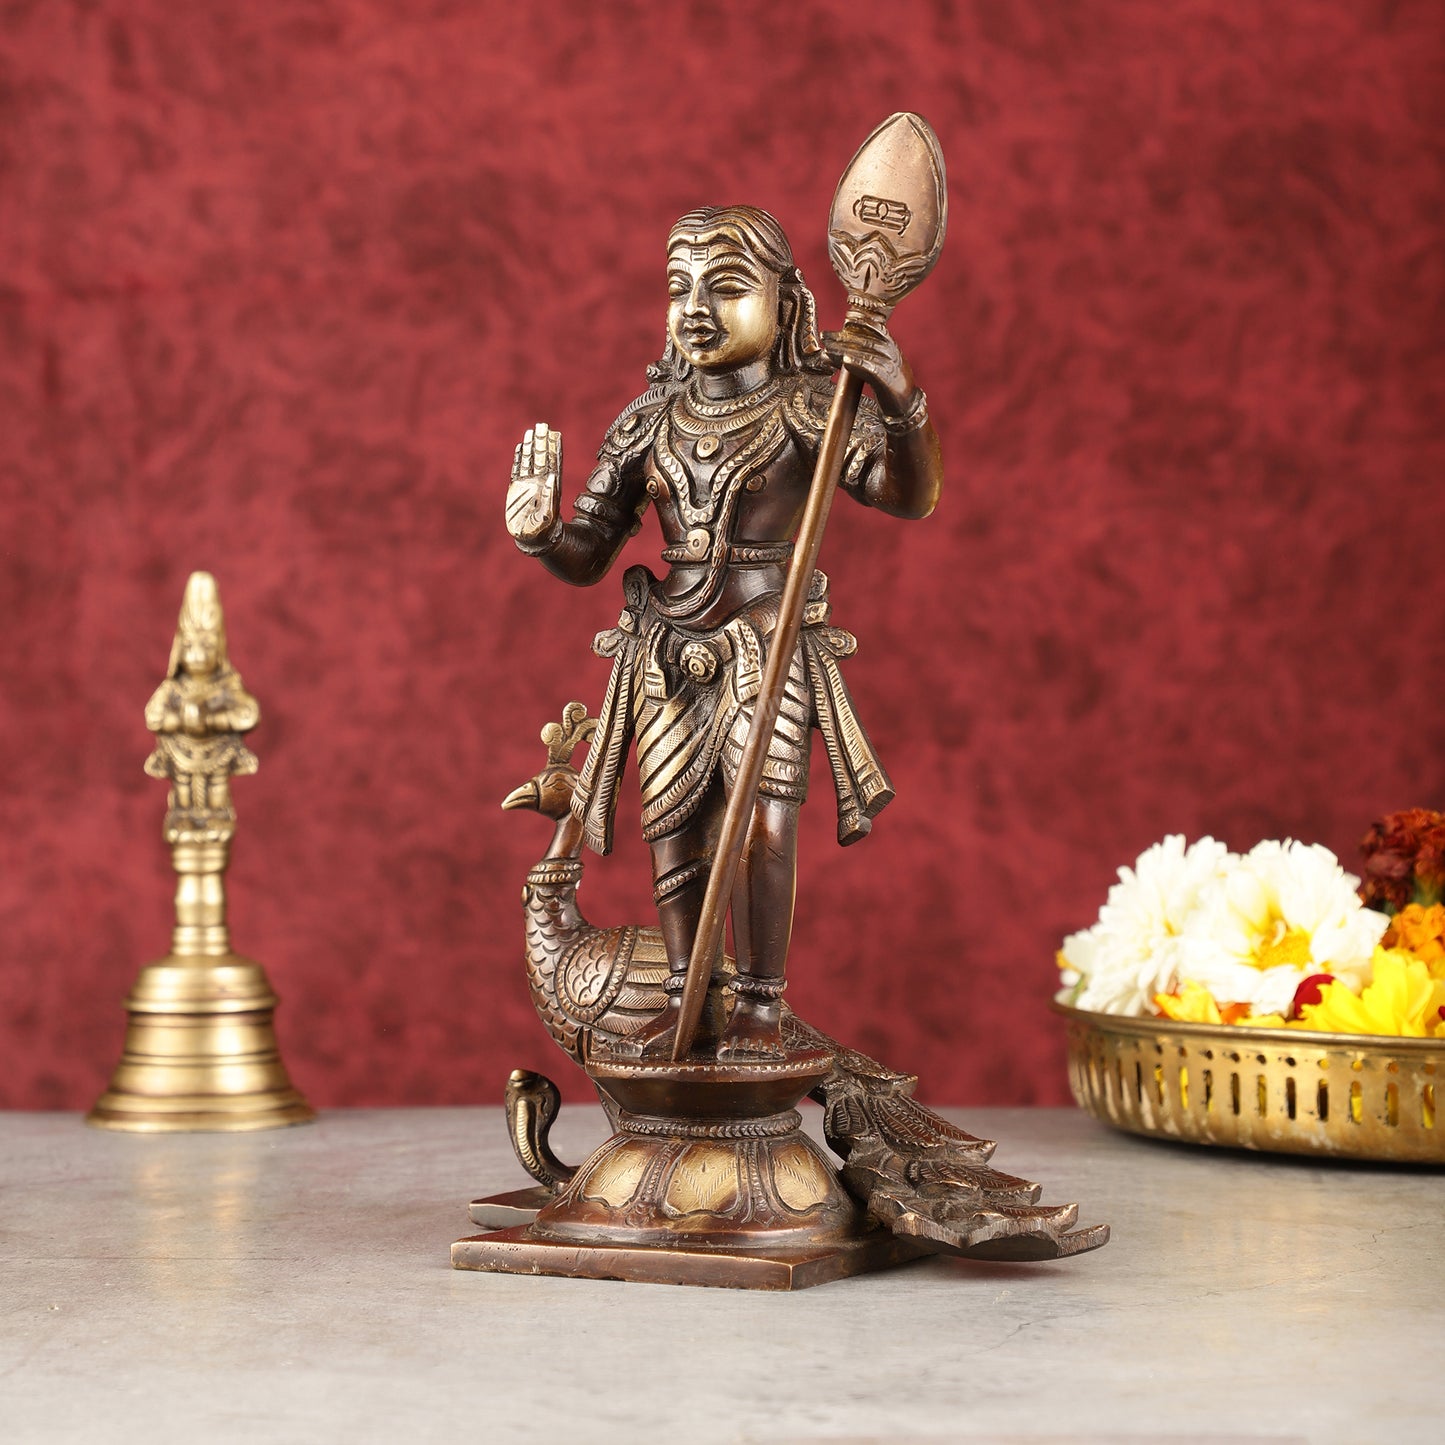 Pure Superfine Brass Raja Murugan Kumaraswamy Idol - 8.75" antique chola